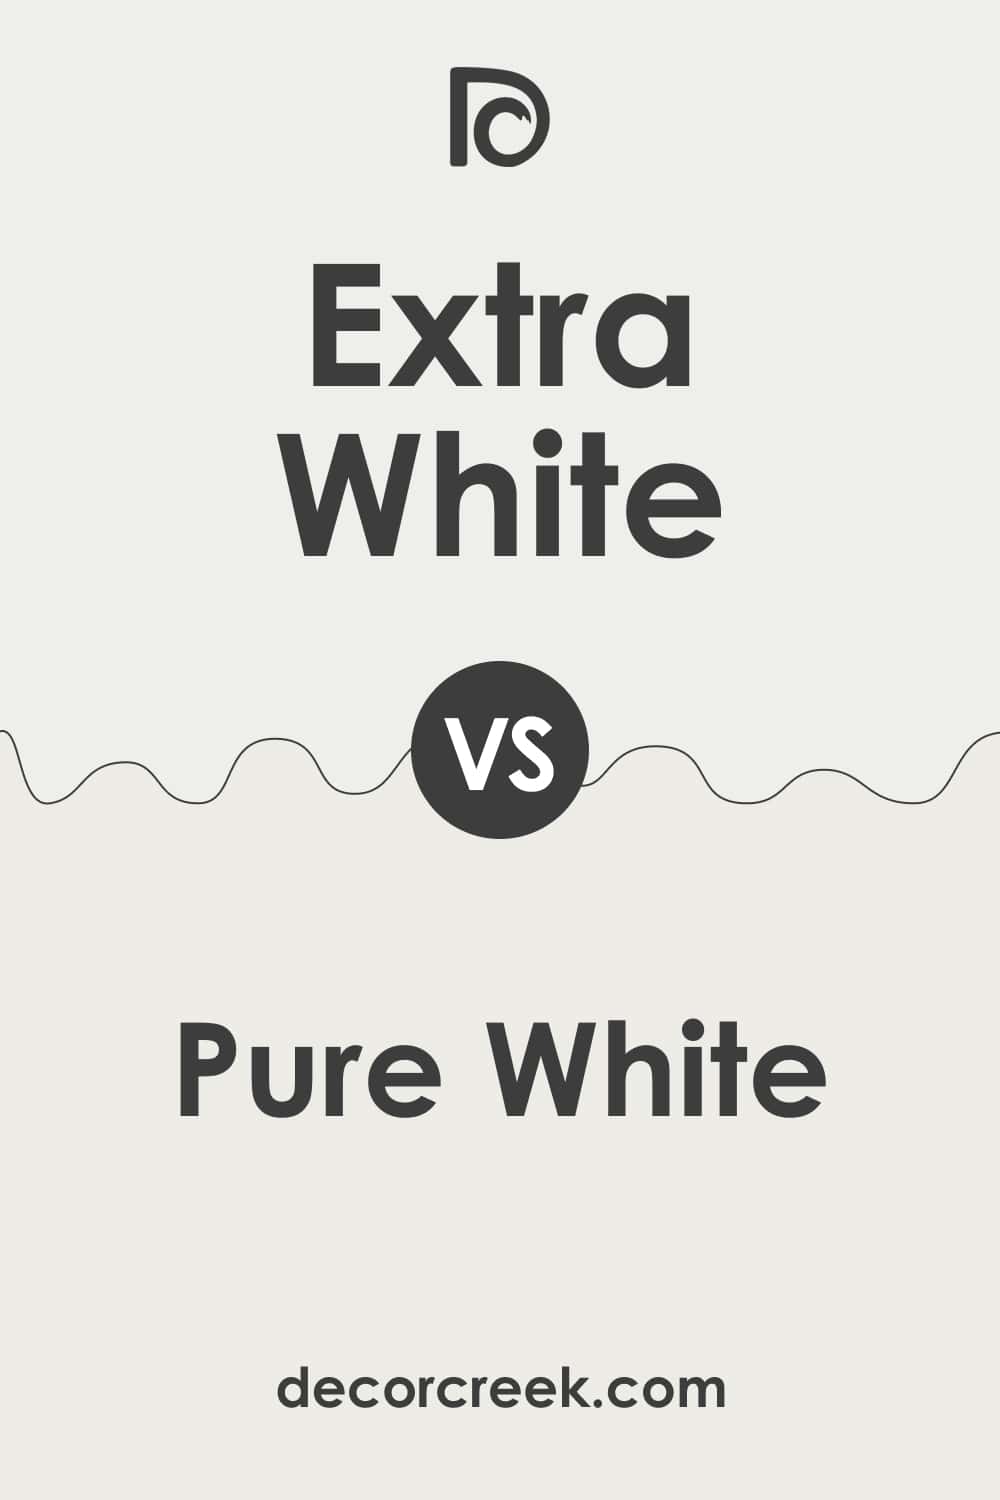 Extra White vs Pure White